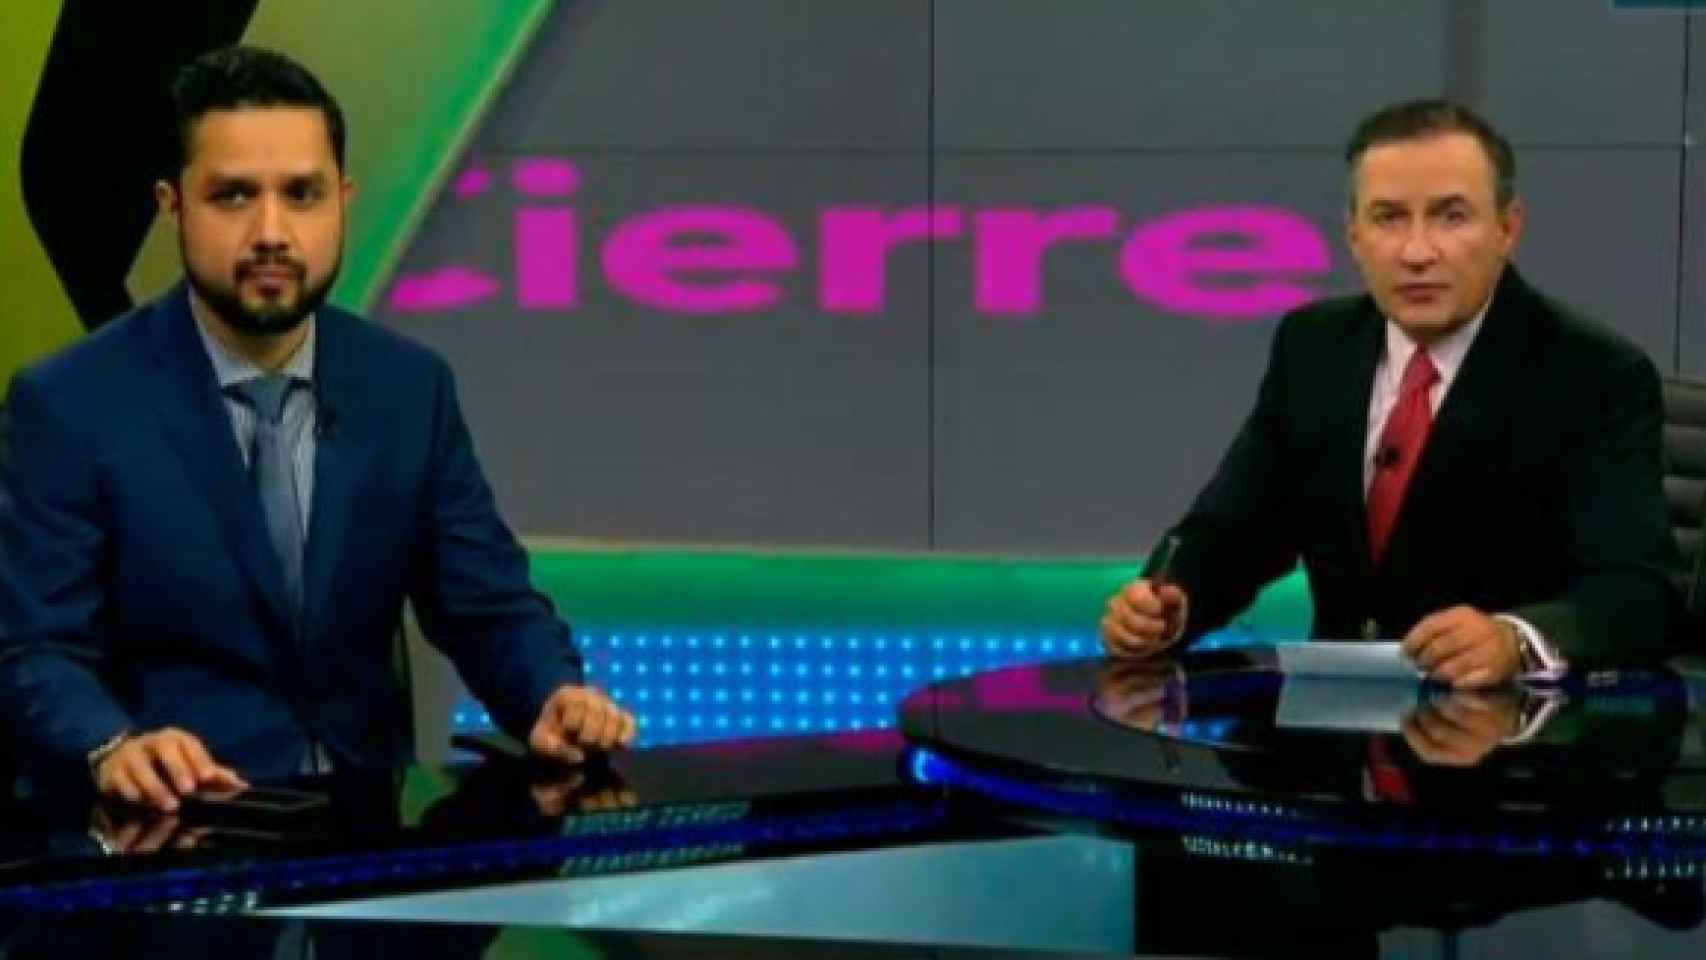 Los presentadores del programa 'El Financiero' de Bloomberg, que confundieron al president, Carles Puigdemont, con un detenido / CD